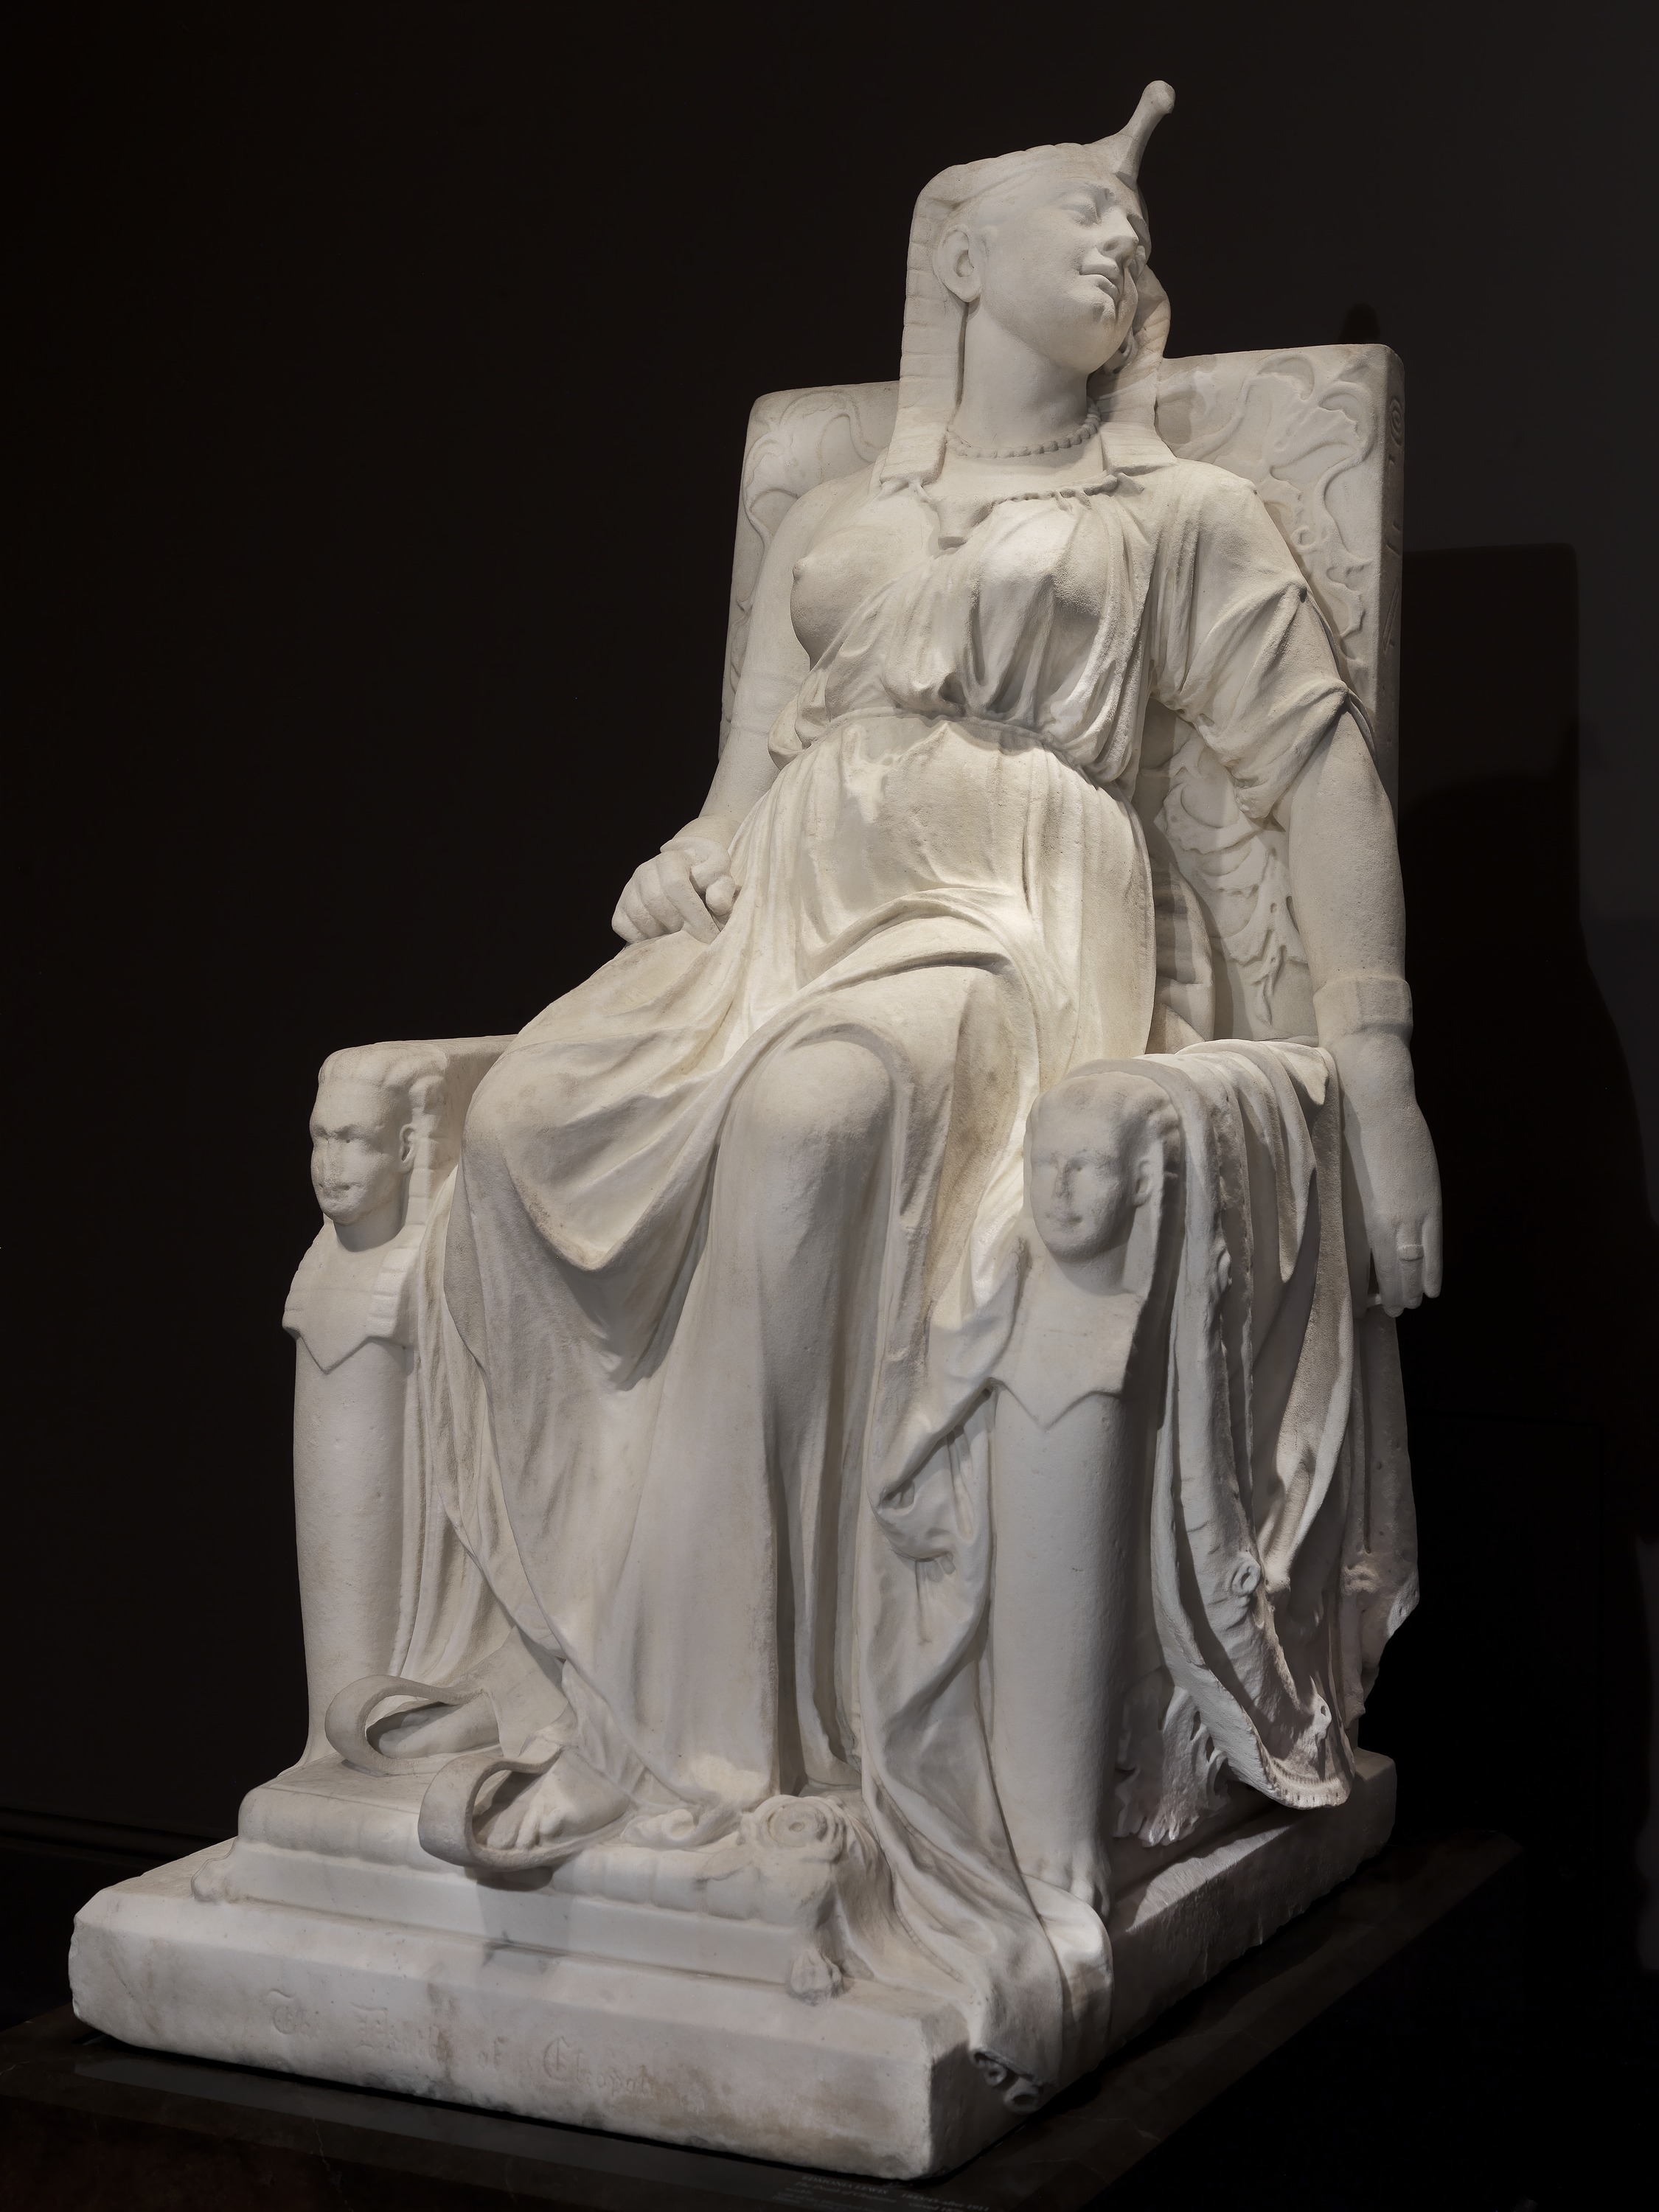 埃及艷后之死 by Edmonia Lewis - 1876 - 160.0 x 79.4 x 116.8 cm. 